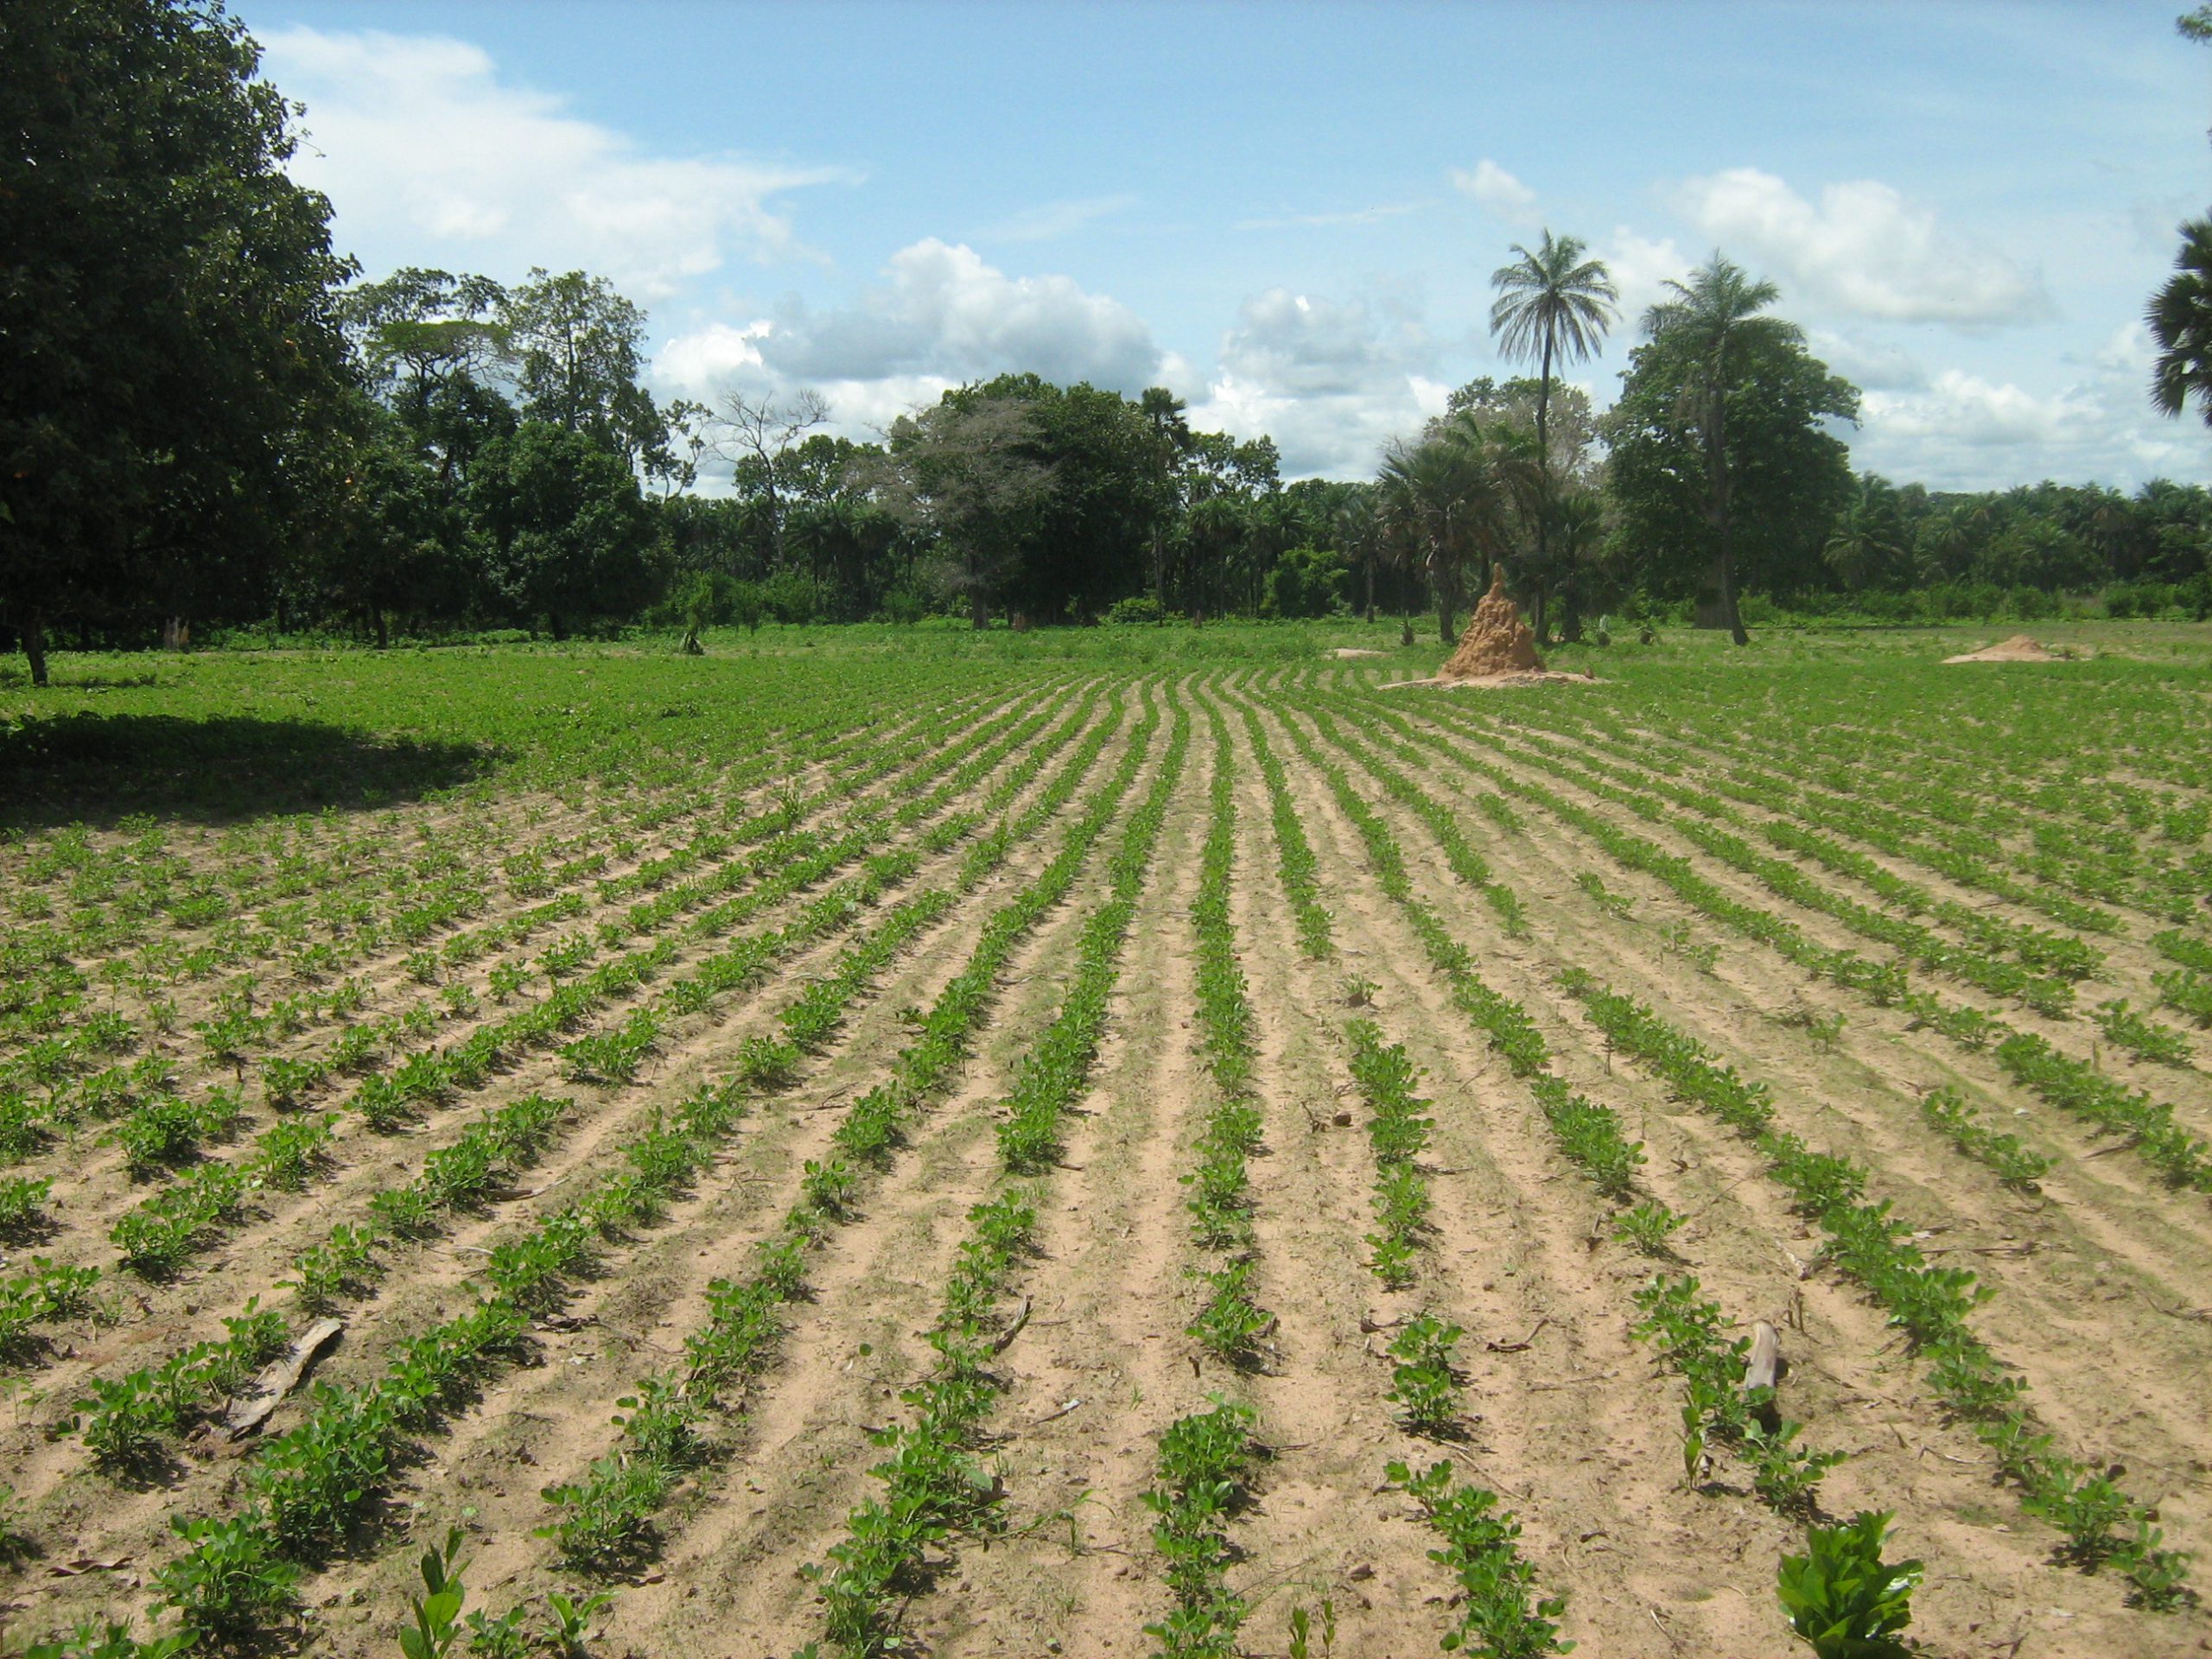  Le Sénégal veut faciliter l’accès des jeunes au foncier agricole